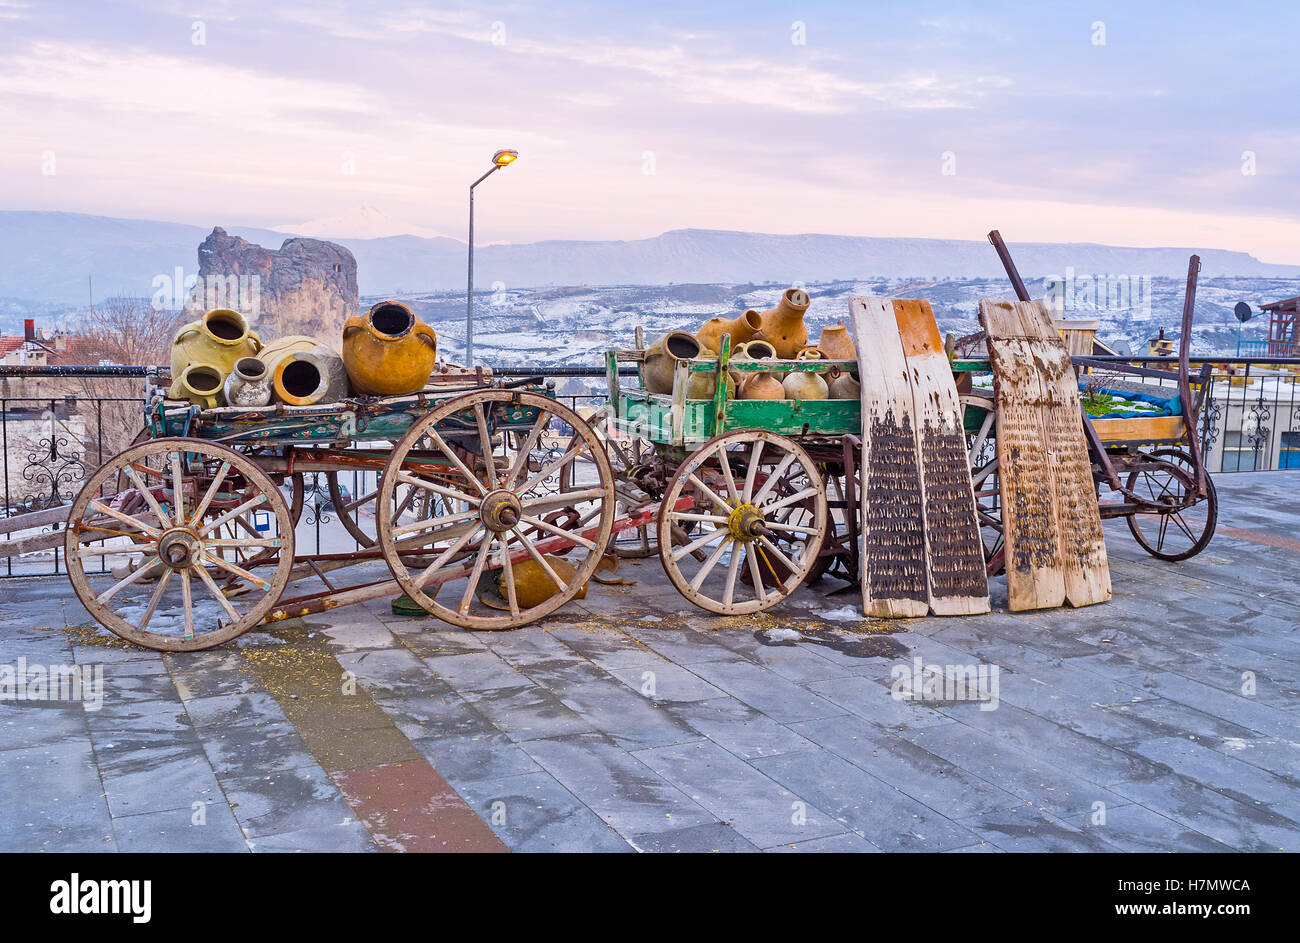 Il wintage carri di legno con pentole di creta decorare la strada di Ortahisar mountain resort, Cappadocia, Turchia. Foto Stock